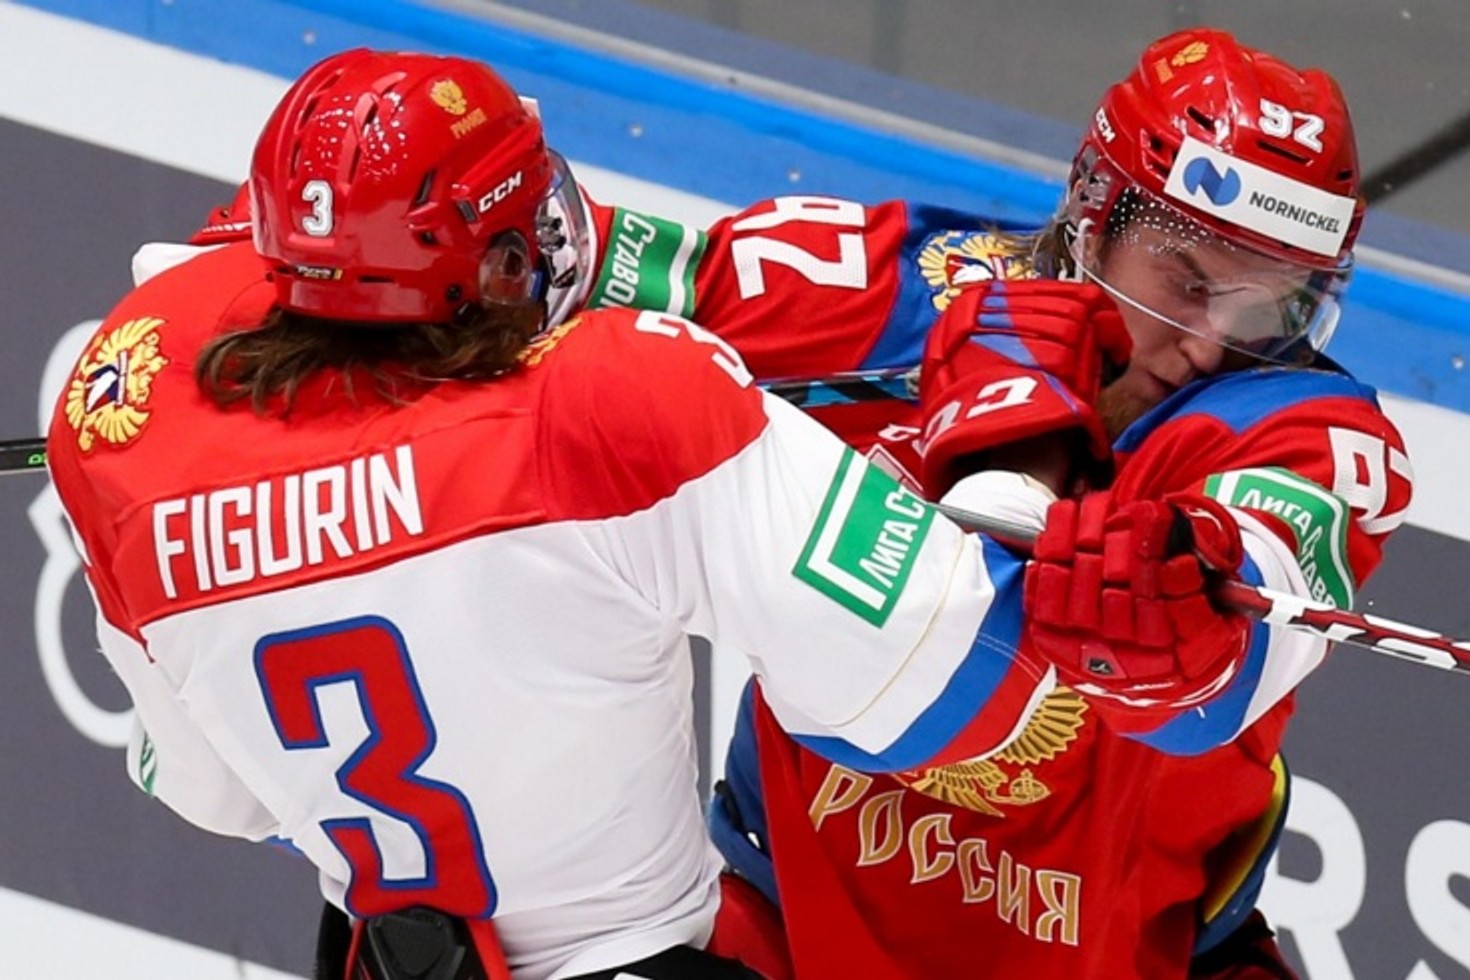 Сборным России и Беларуси по хоккею запретили участие в чемпионате мира 2023 года 